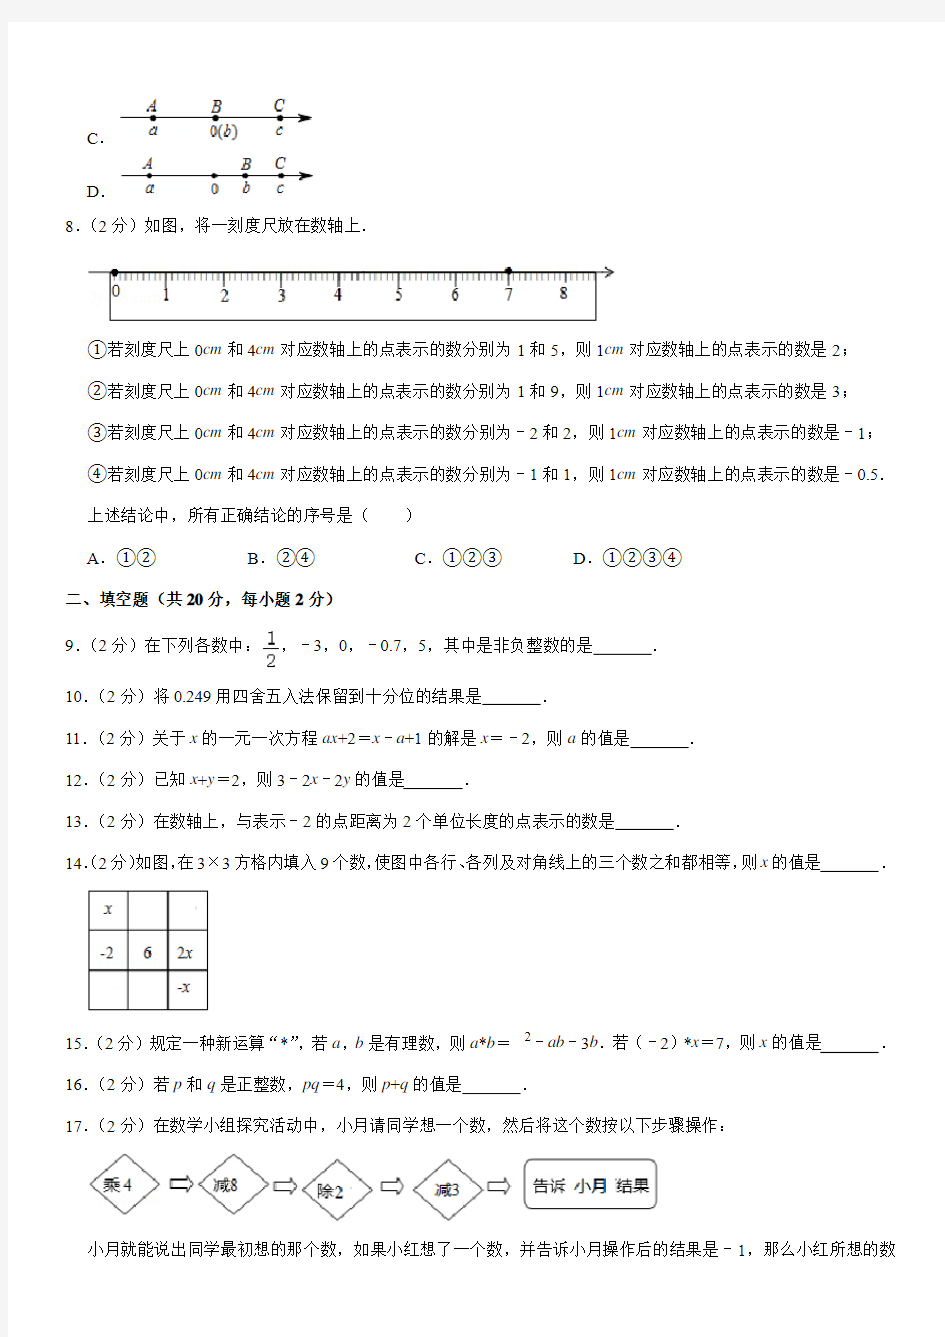 2019-2020学年北京市十一学校七年级(上)期中数学试卷